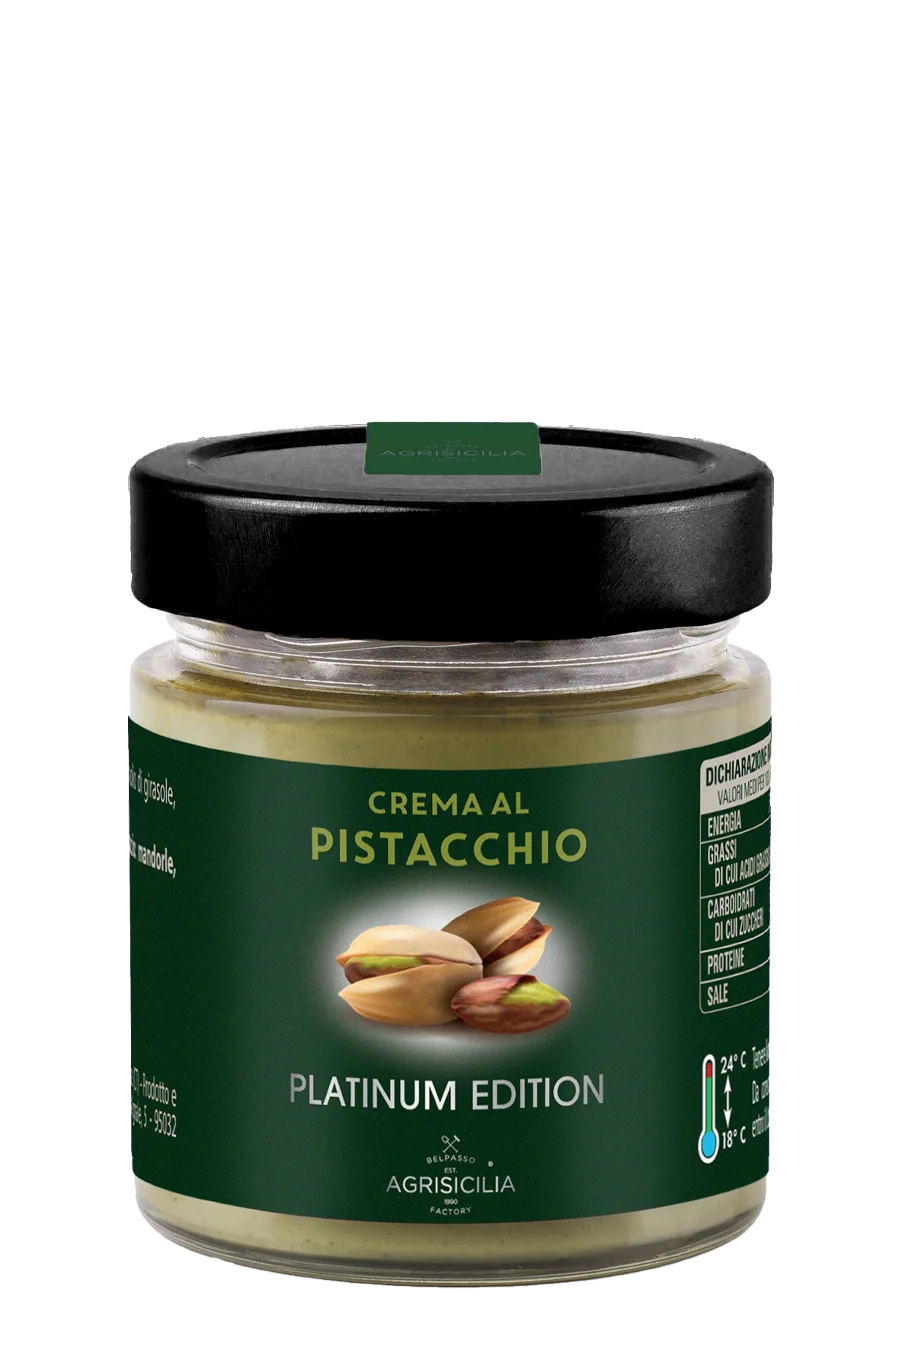 Crema al Pistacchio 50% PLATINUM EDITION